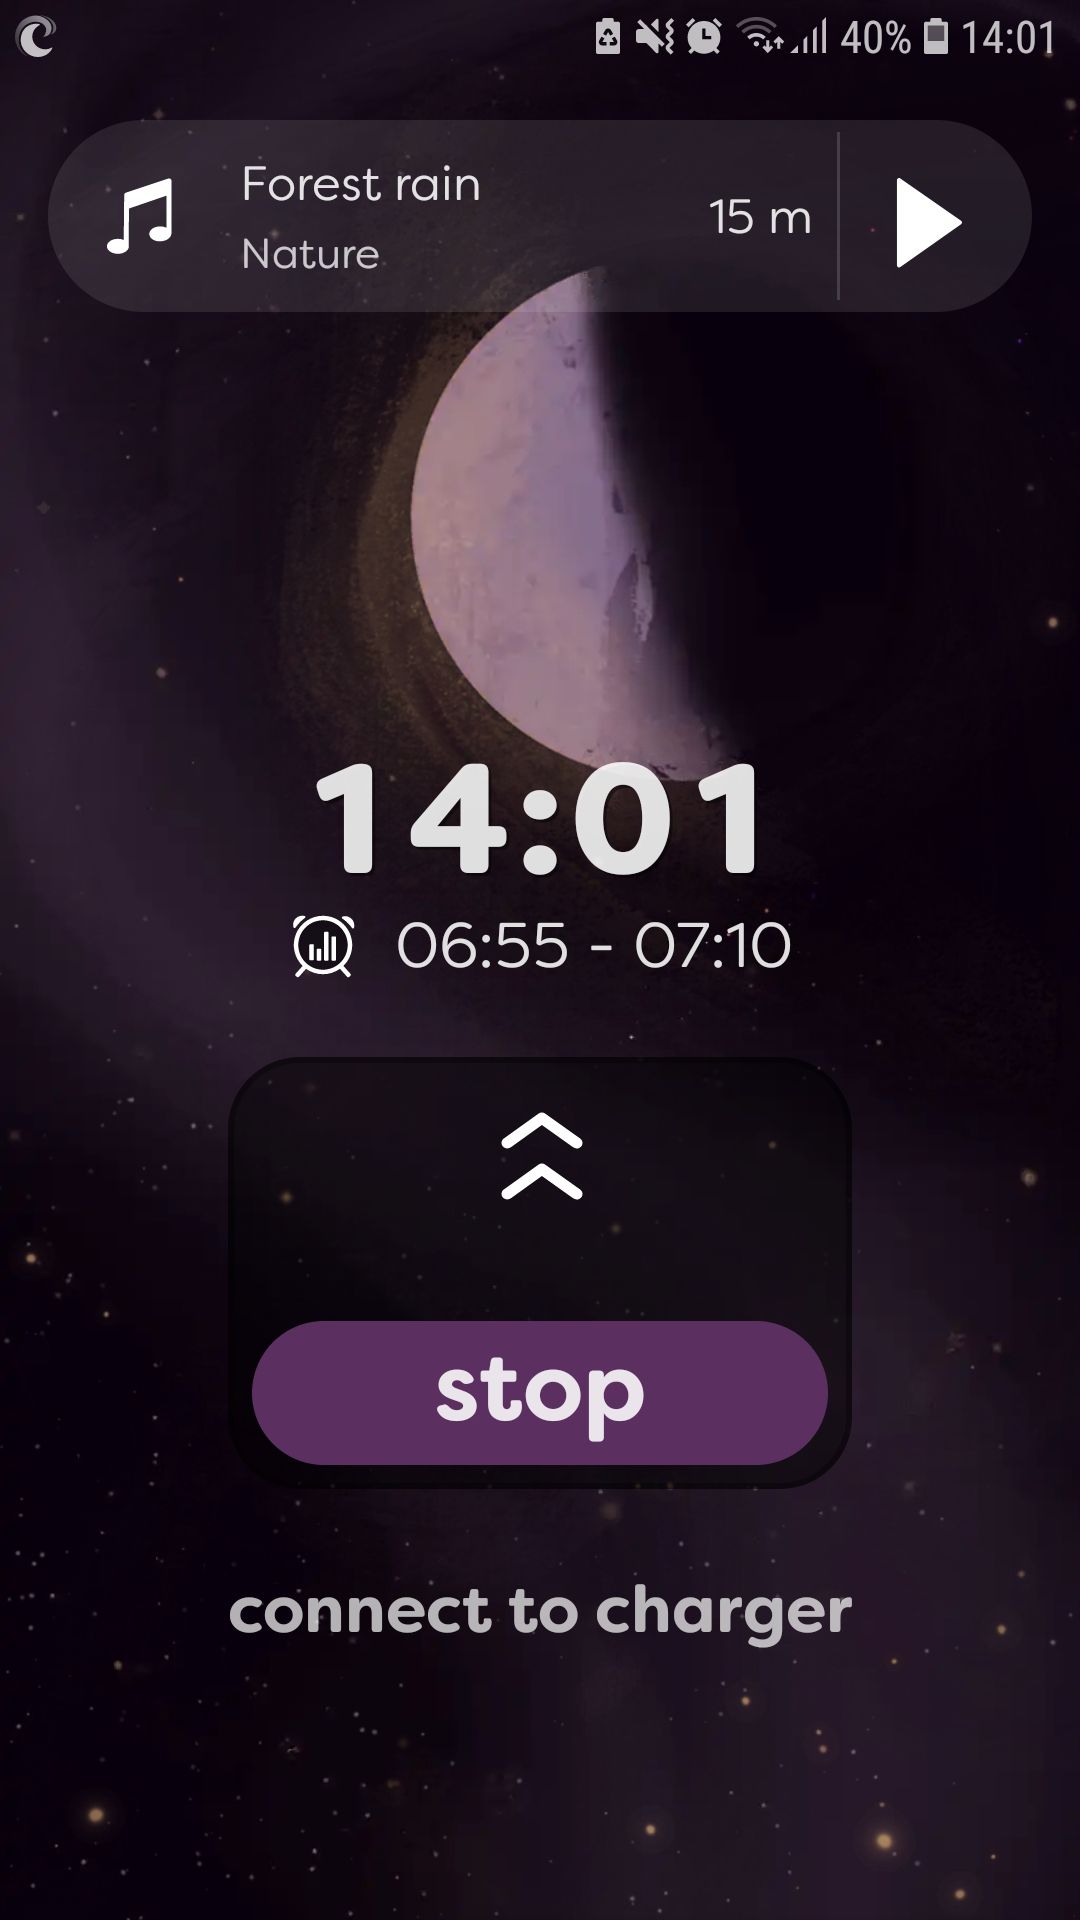 Sleepwave sleep tracking mobile app